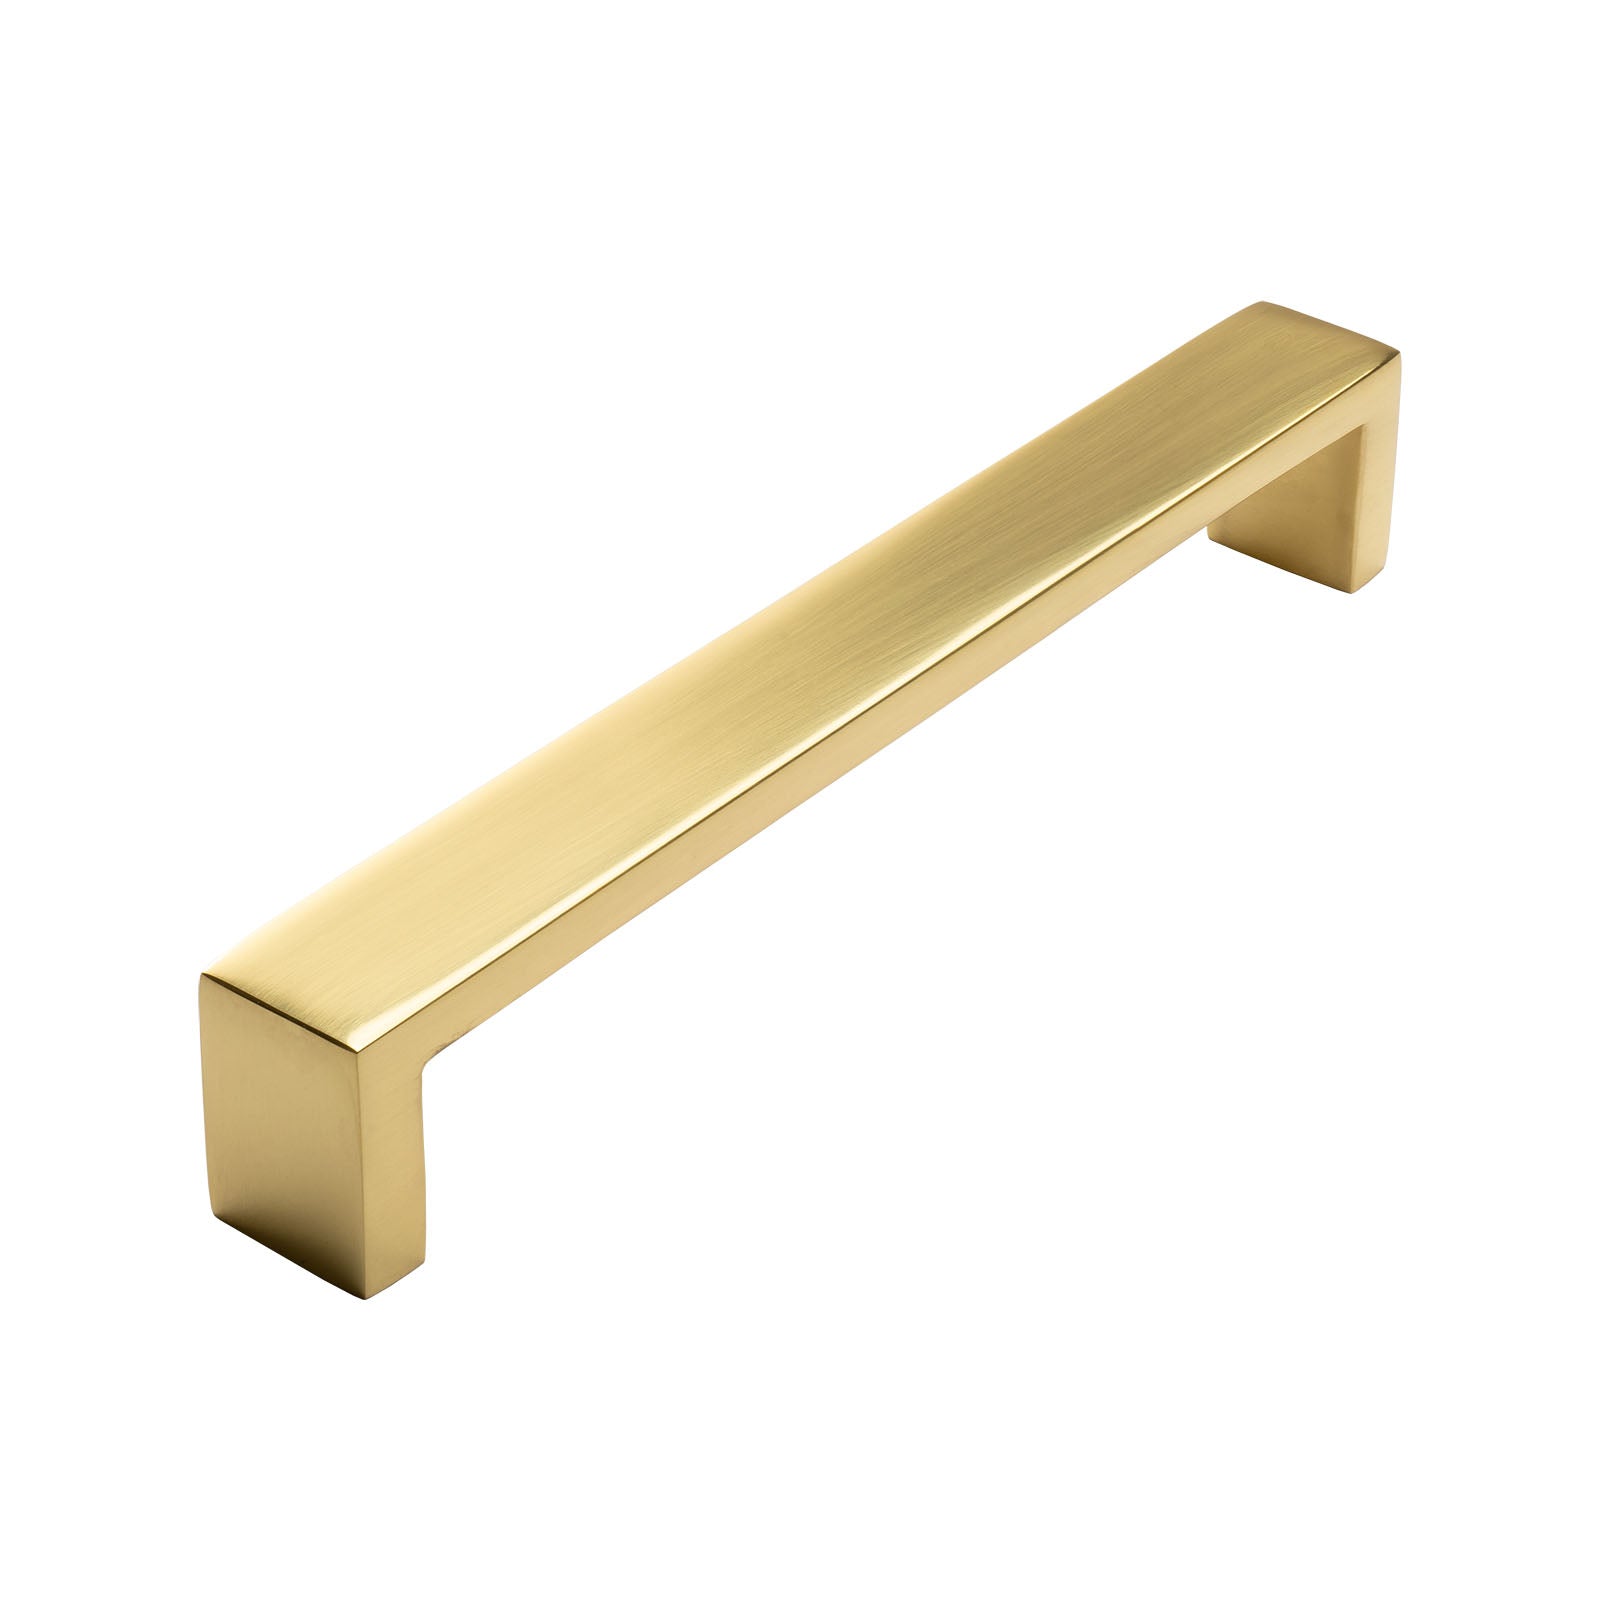 brass designer kitchen handles